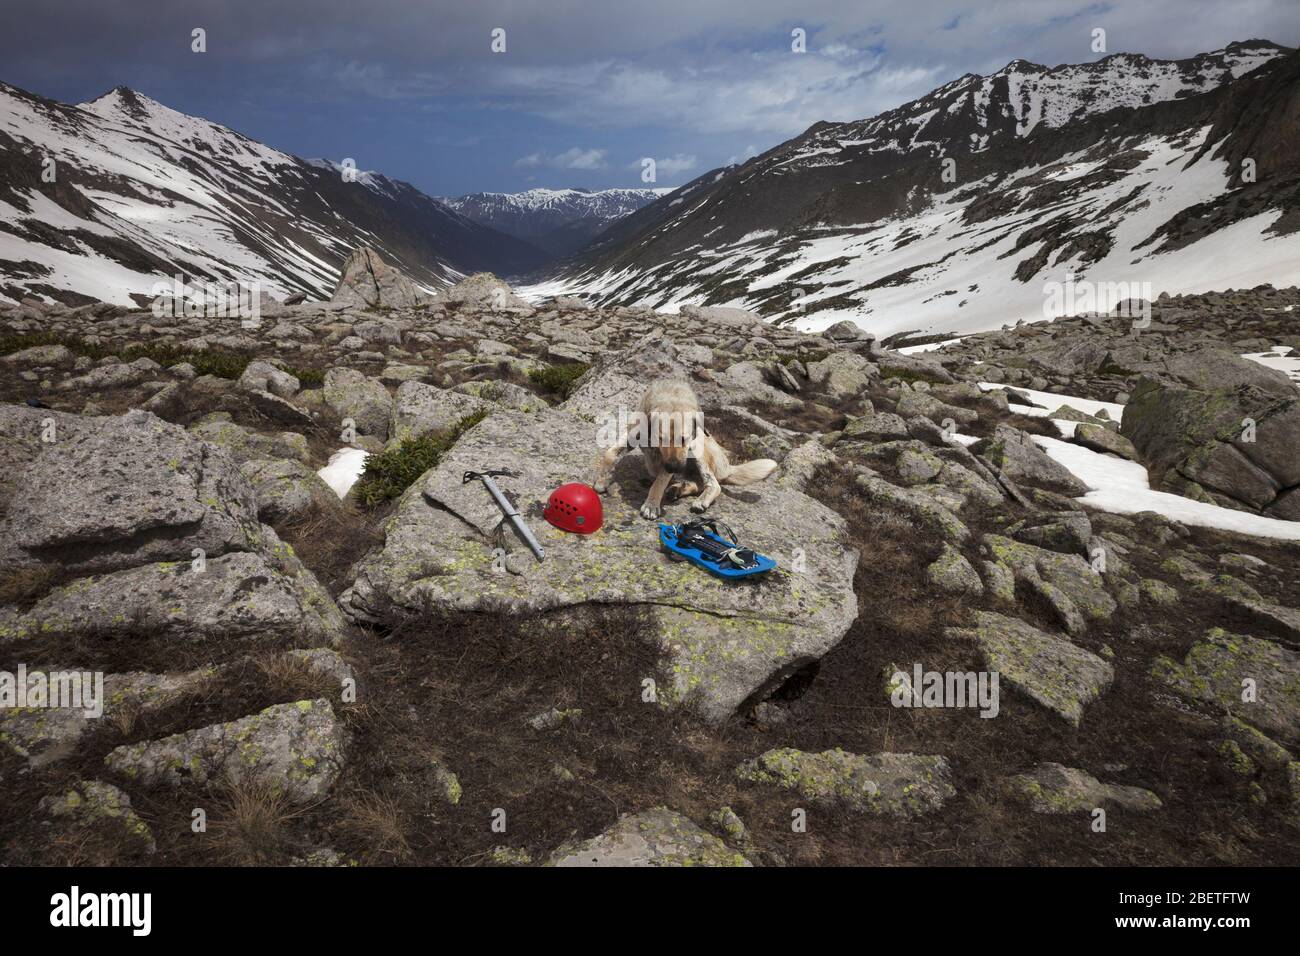 Hund auf großem Stein mit Wanderausrüstung: Blaue Schneeschuhe, roter Kletterhelm und Eispickel. Hohe schneebedeckte Berge und blauer Himmel mit Wolken. Türkei, Kachkar Stockfoto